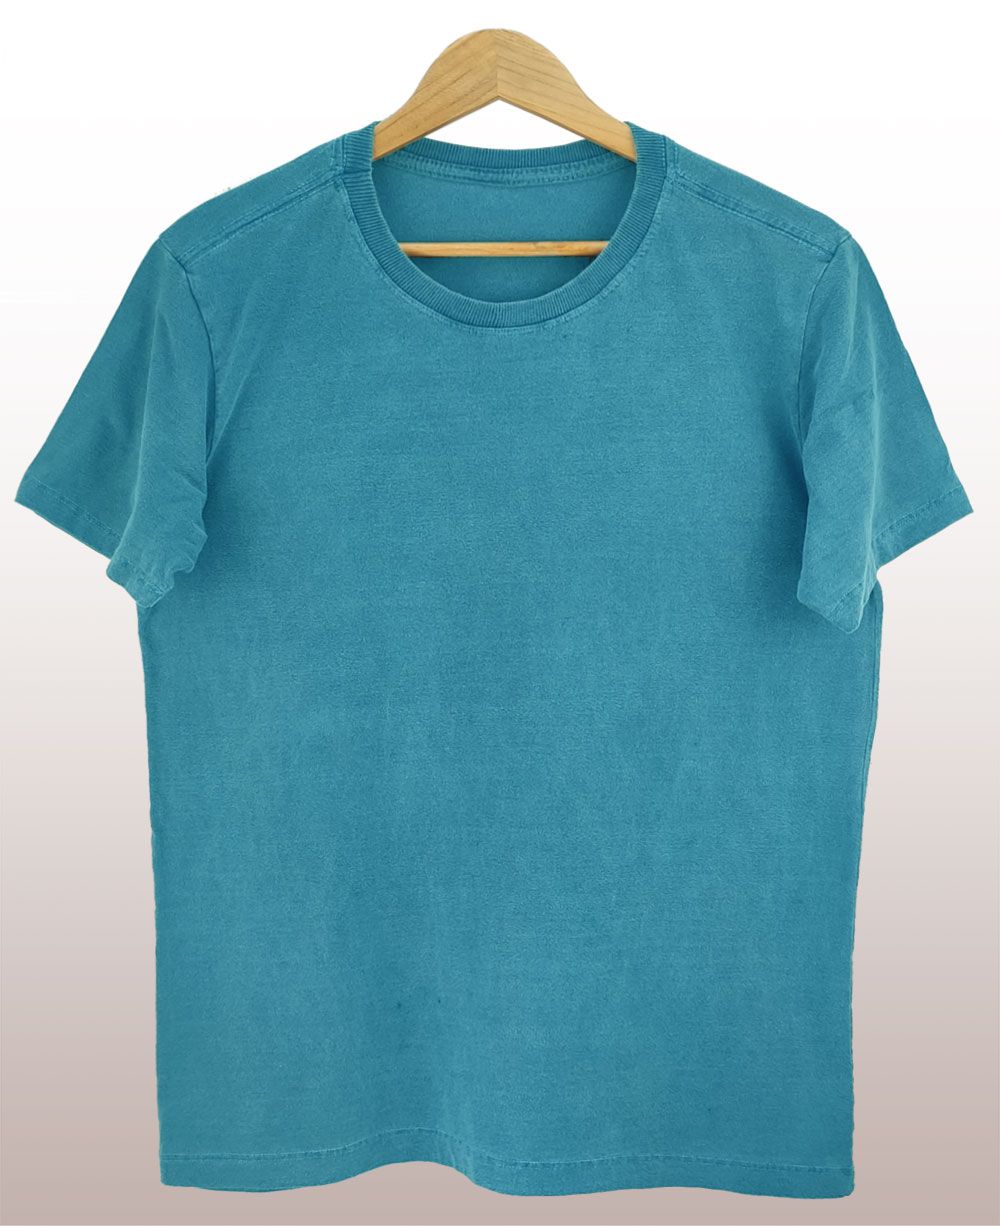 Camiseta estonada turquesa - ESTONADO.COM - Sua Coleção com Estilo